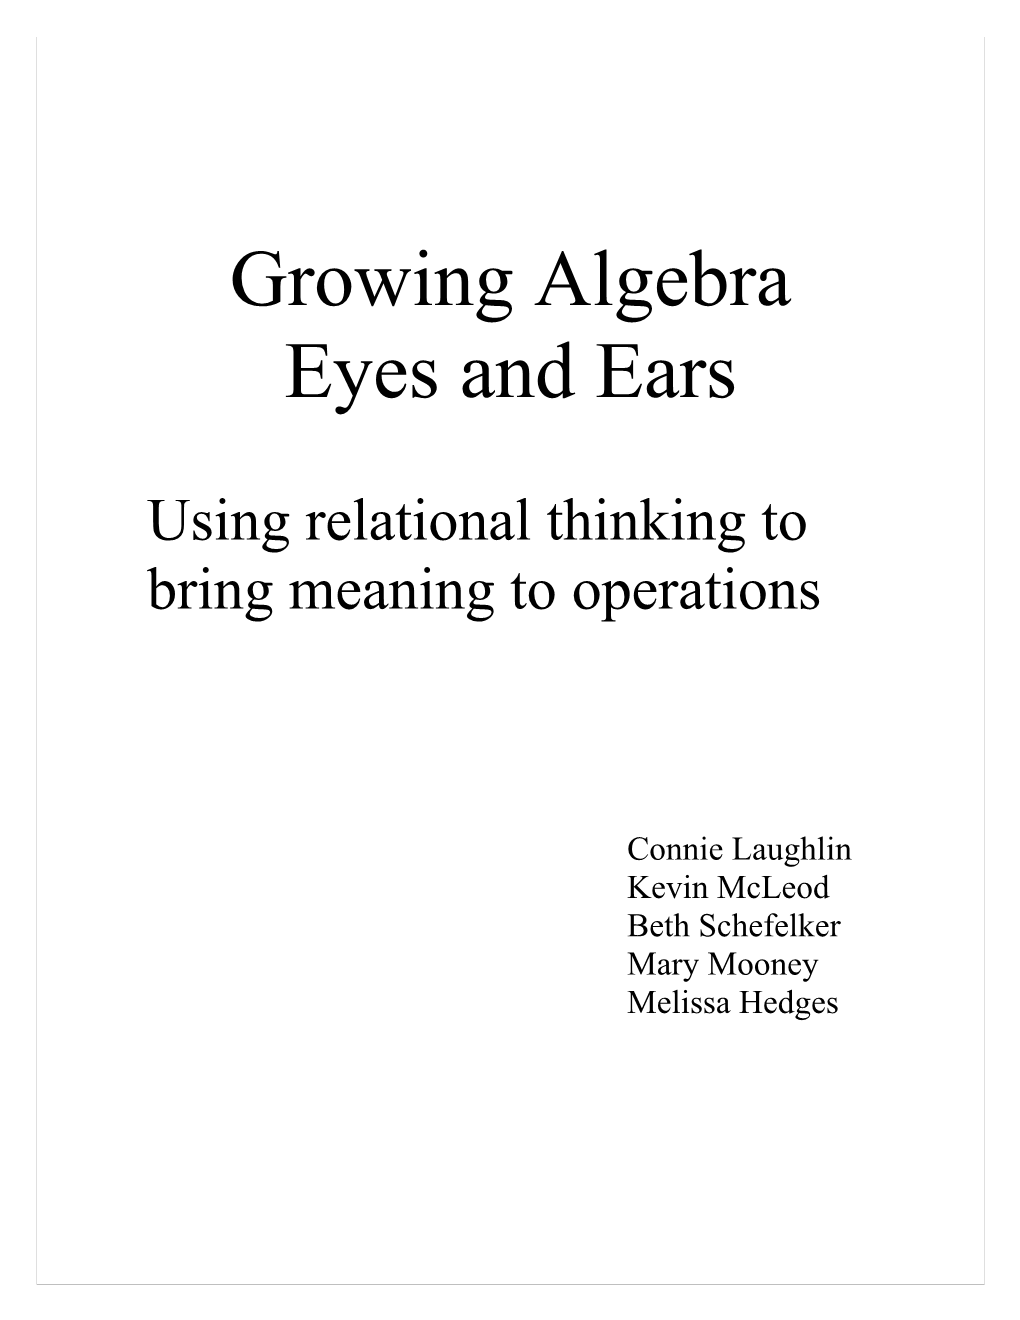 Growing Algebra Eyes and Ears